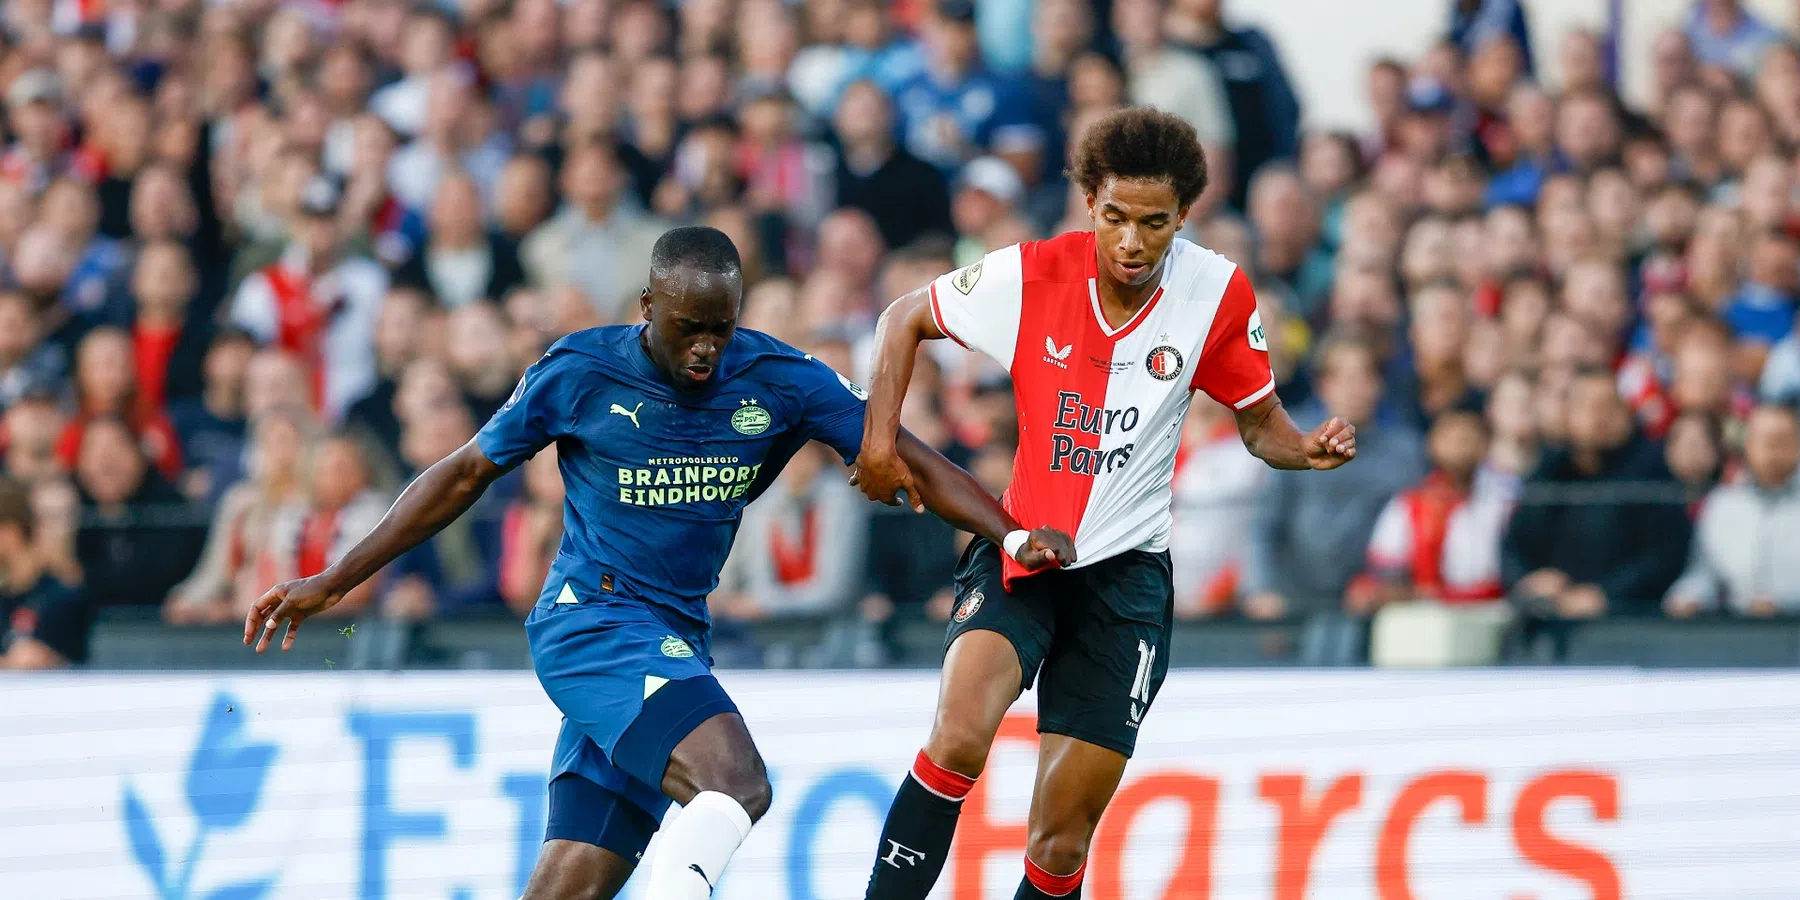 Topper aanstaande in Eredivisie: voorspel de winnaar van Feyenoord - PSV voor €100